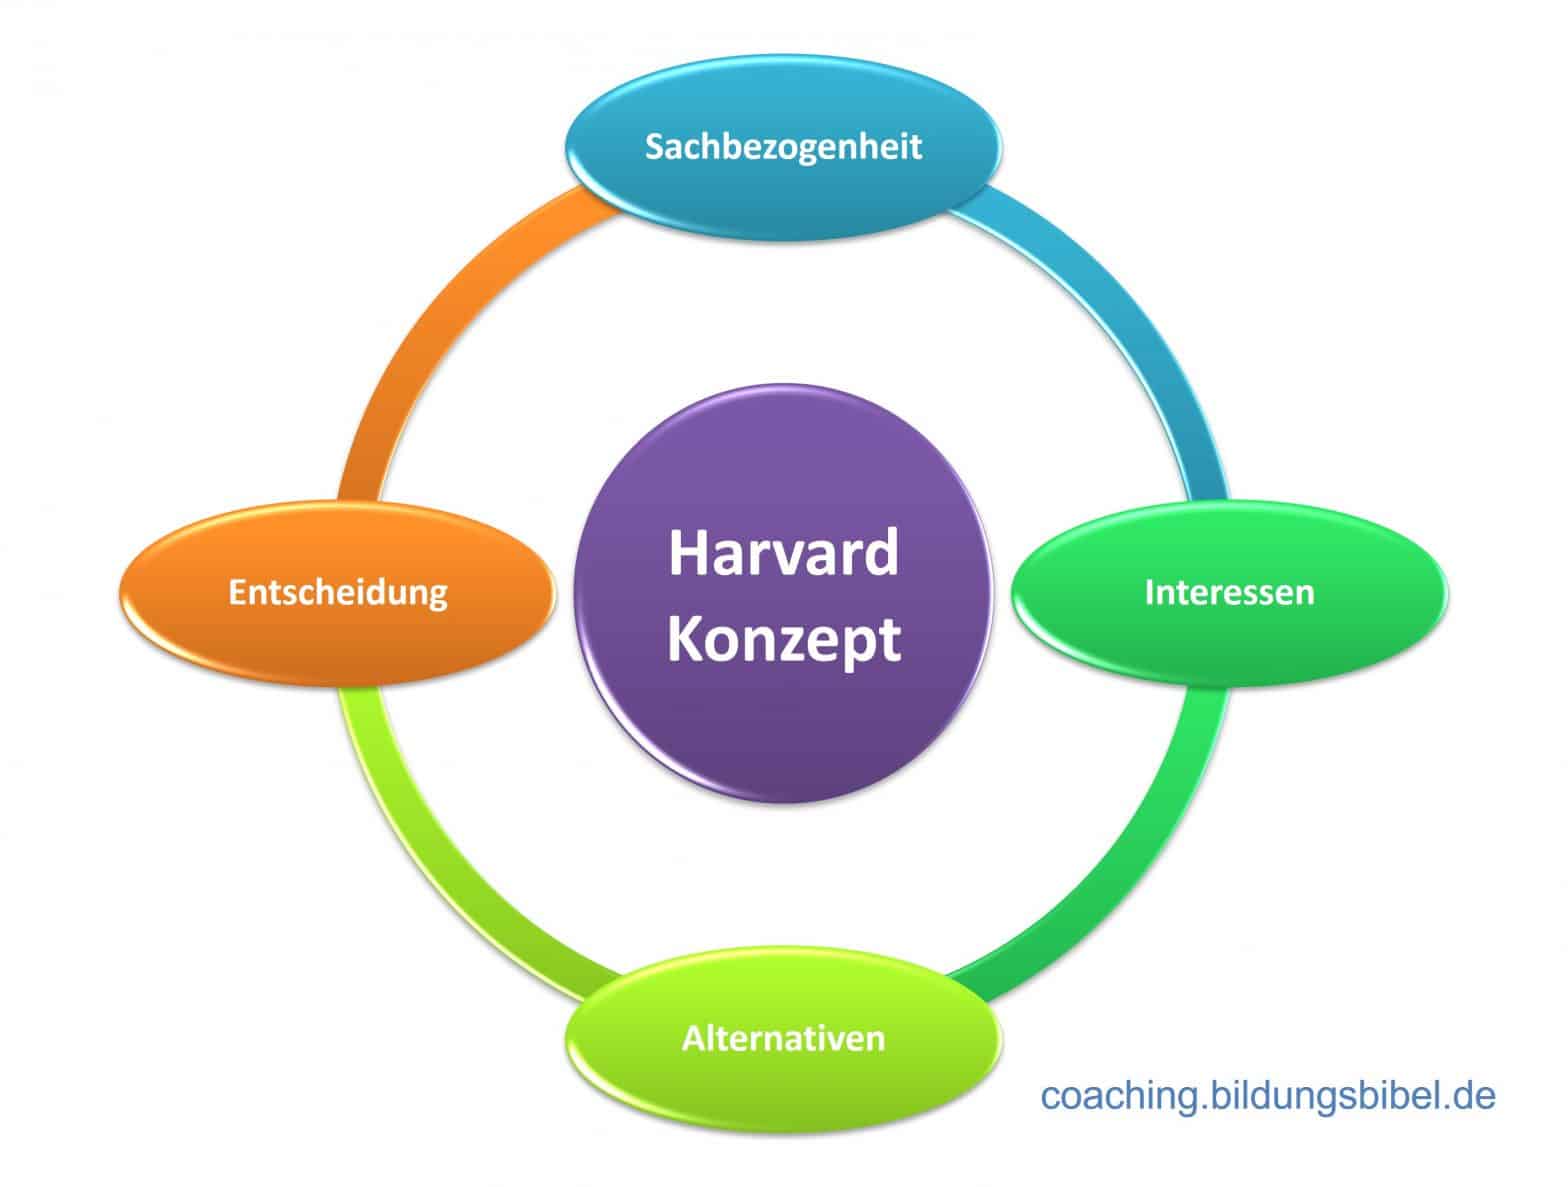 Harvard Konzept, Prinzipien, Sachbezogenheit, Interessen, Alternativen, Entscheidung, Beispiele, Verhandlungstechniken, Kommunikationsmodell.